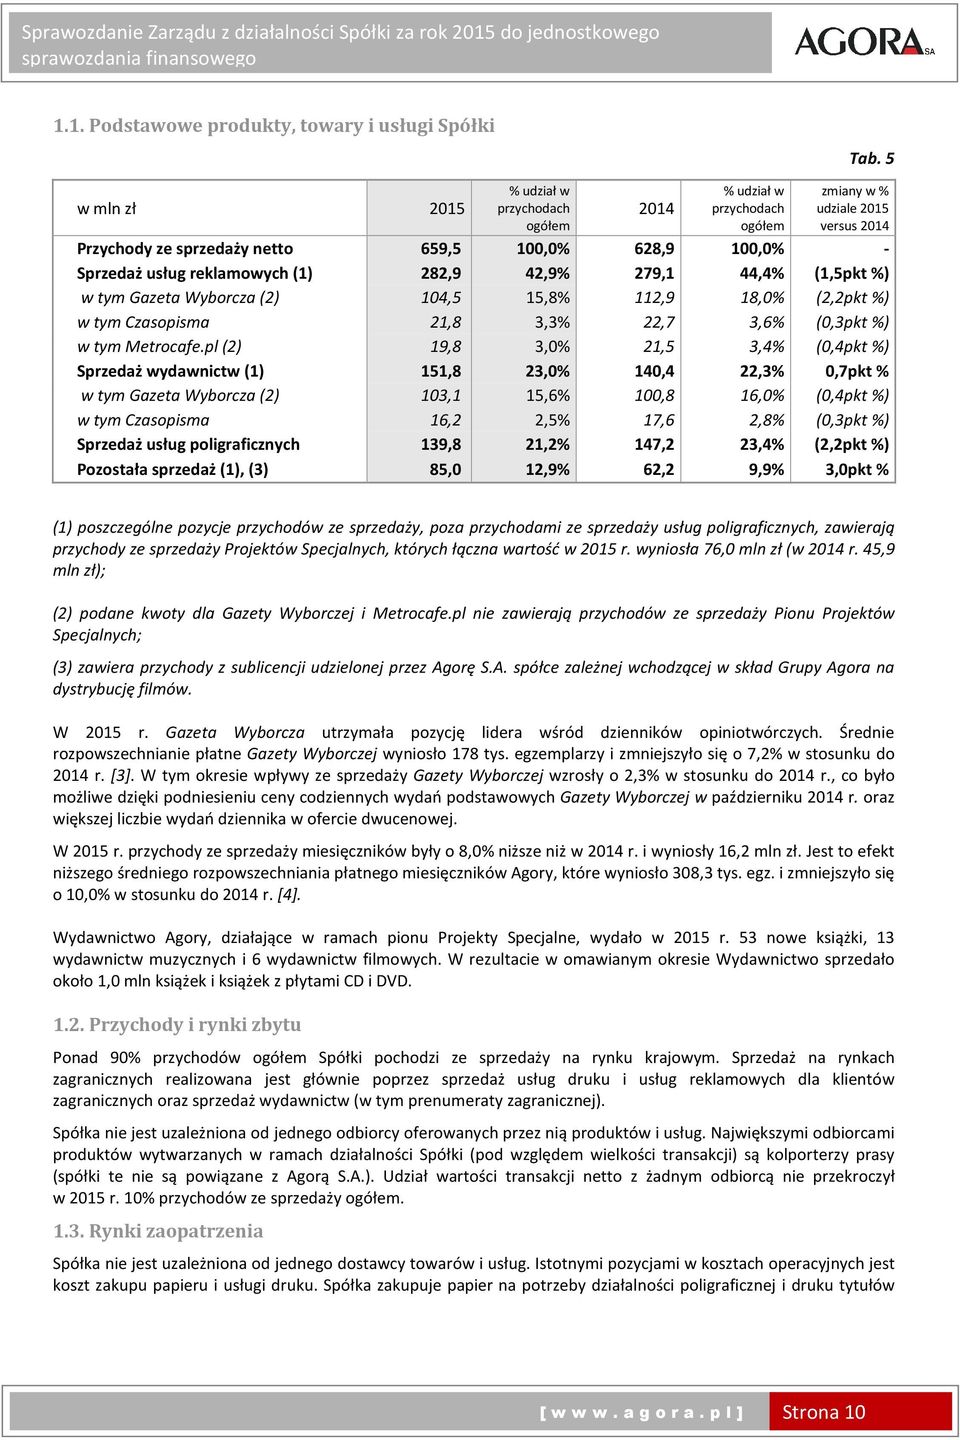 reklamowych (1) 282,9 42,9% 279,1 44,4% (1,5pkt%) w tym Gazeta Wyborcza (2) 104,5 15,8% 112,9 18,0% (2,2pkt%) w tym Czasopisma 21,8 3,3% 22,7 3,6% (0,3pkt%) w tym Metrocafe.